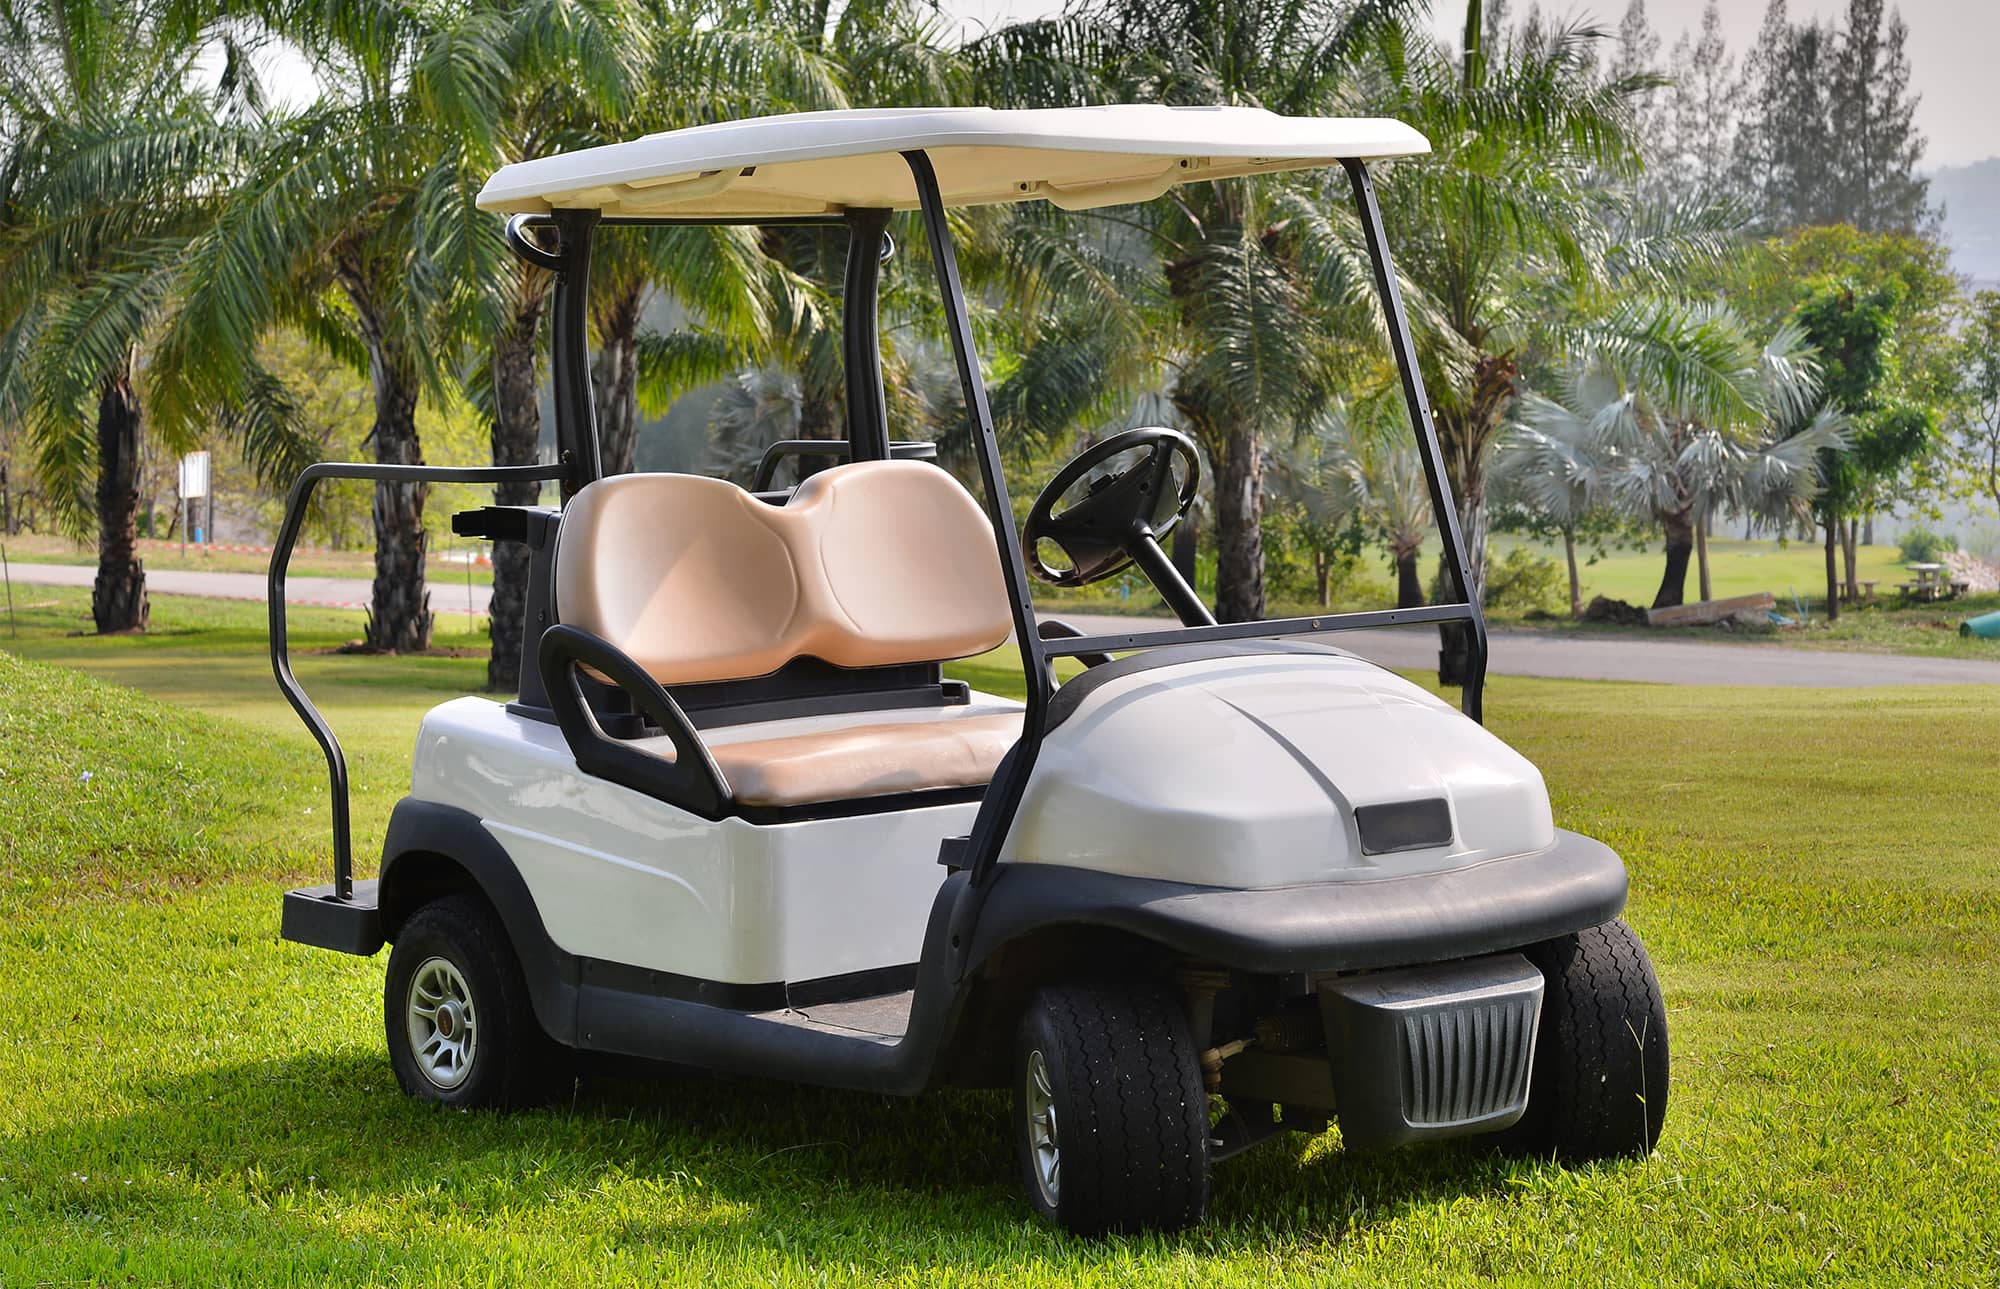 A golf cart